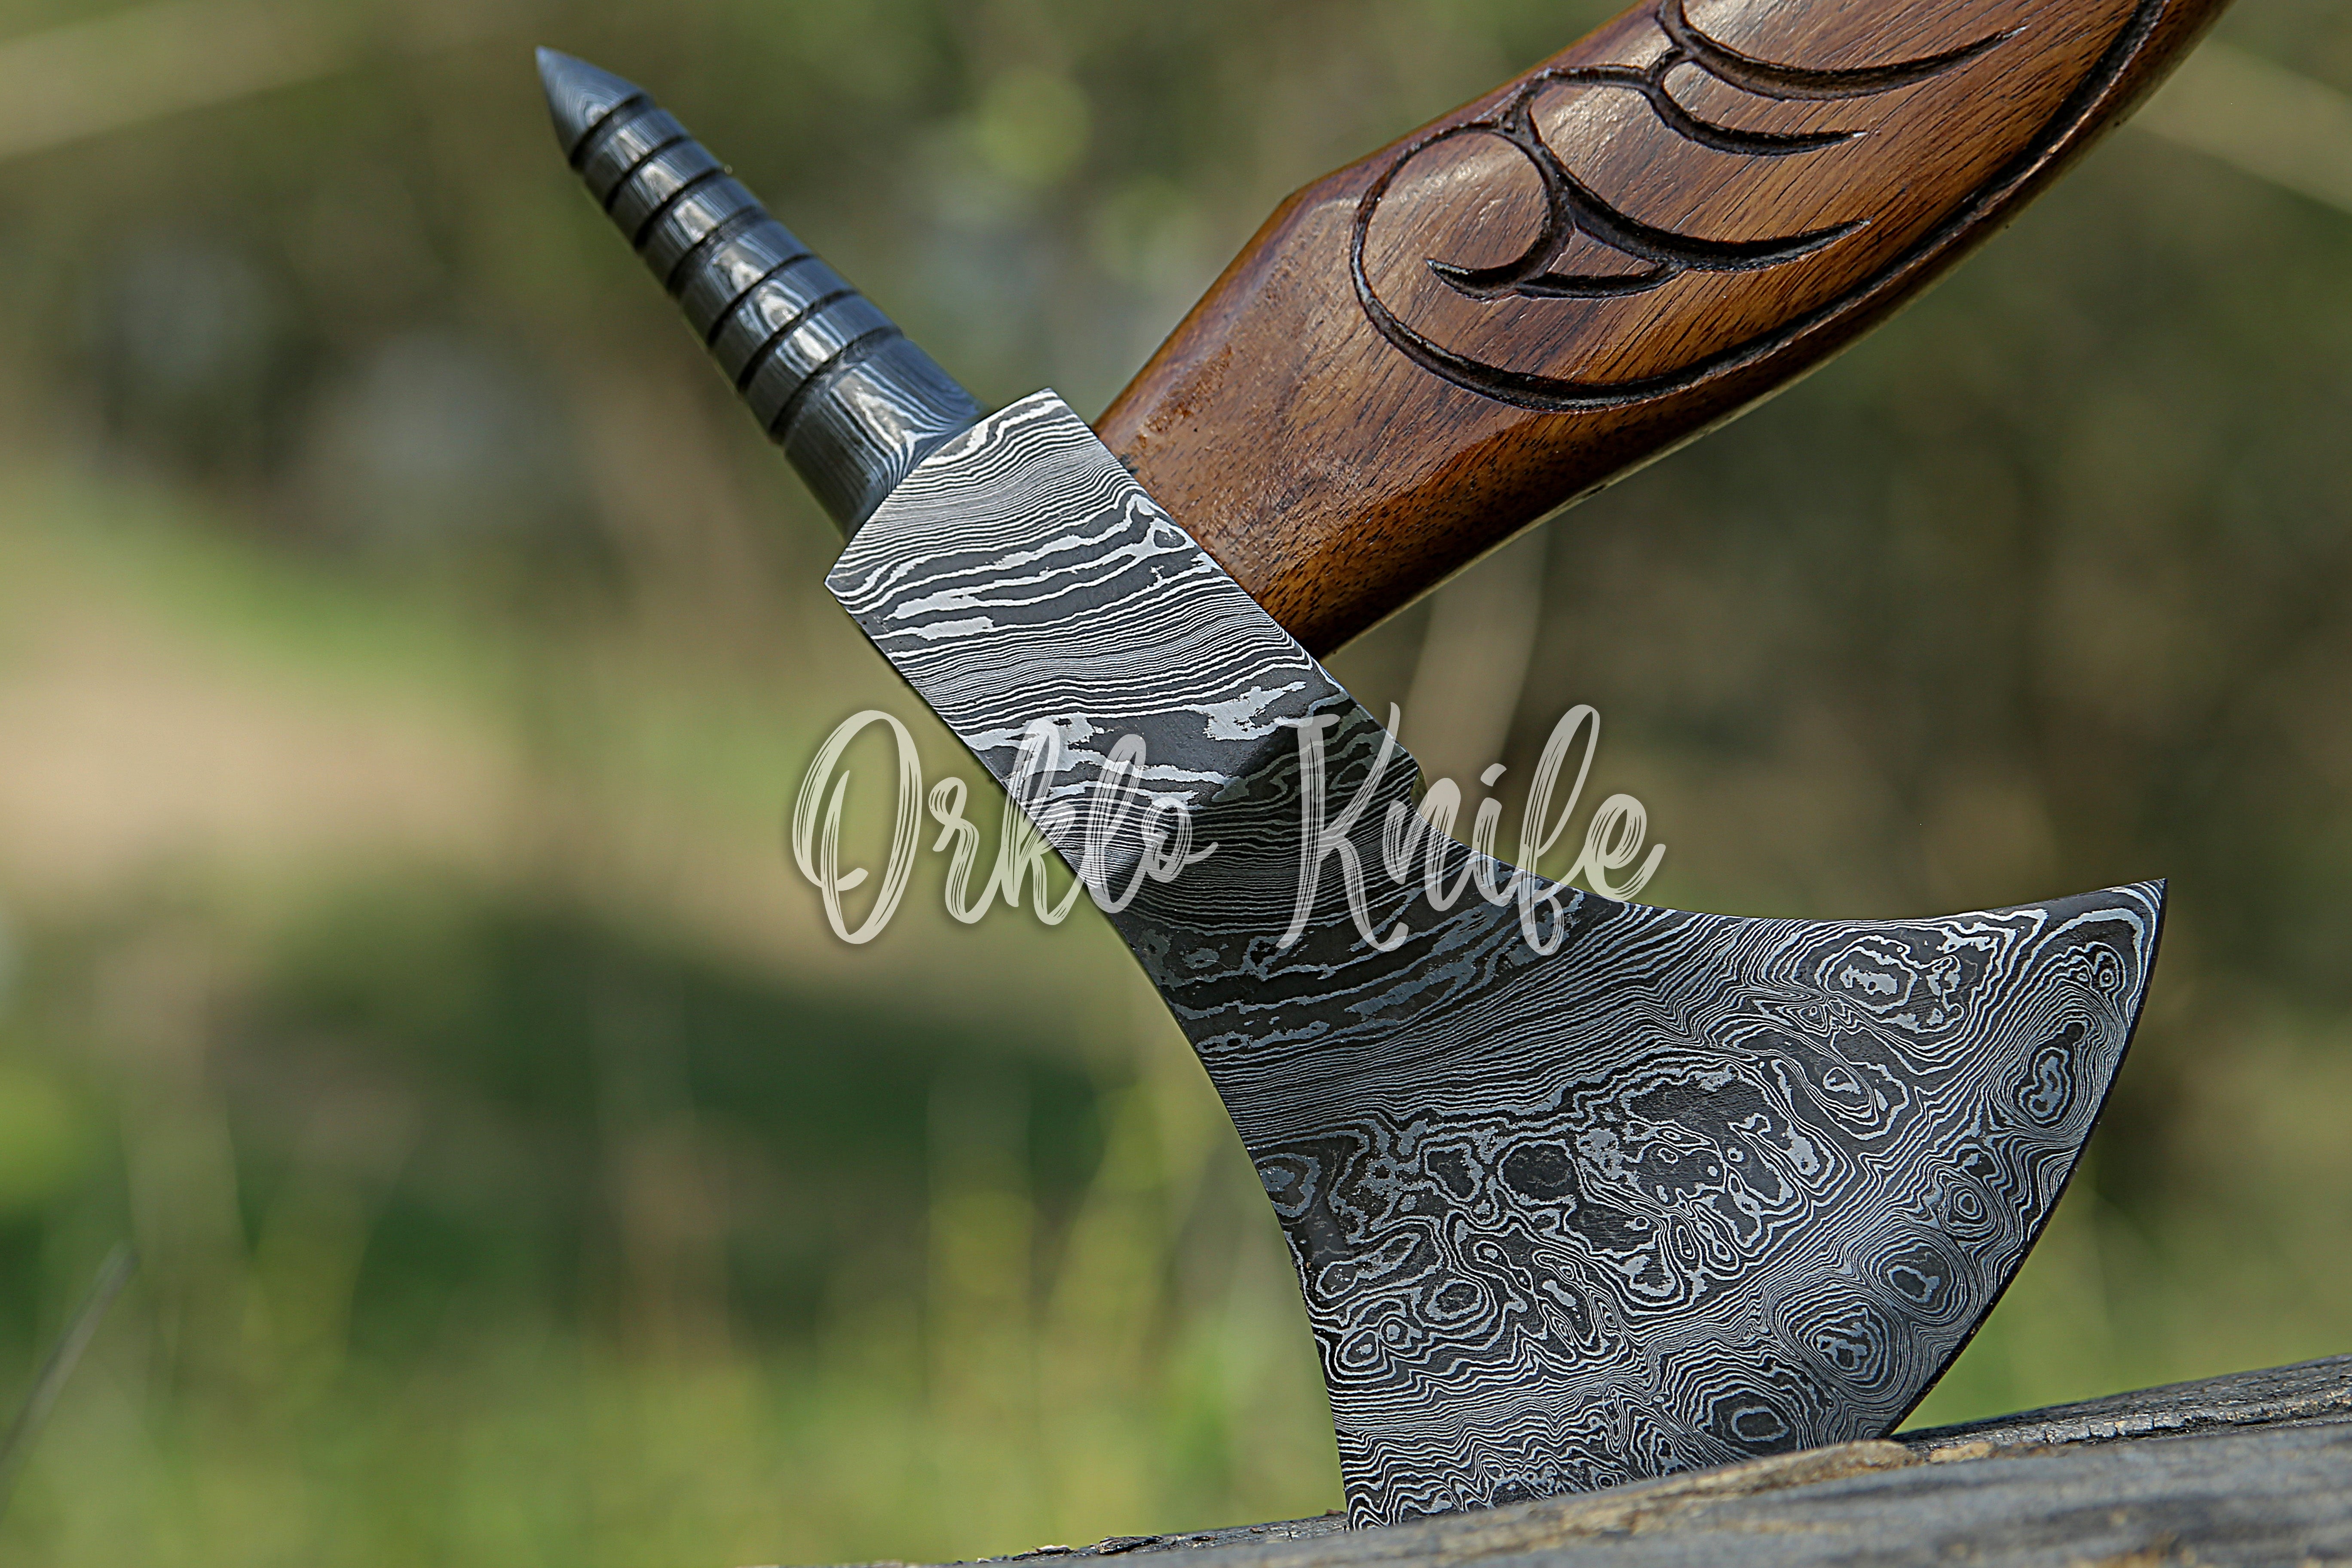 Handmade Damascus steel axe - Orkloknife